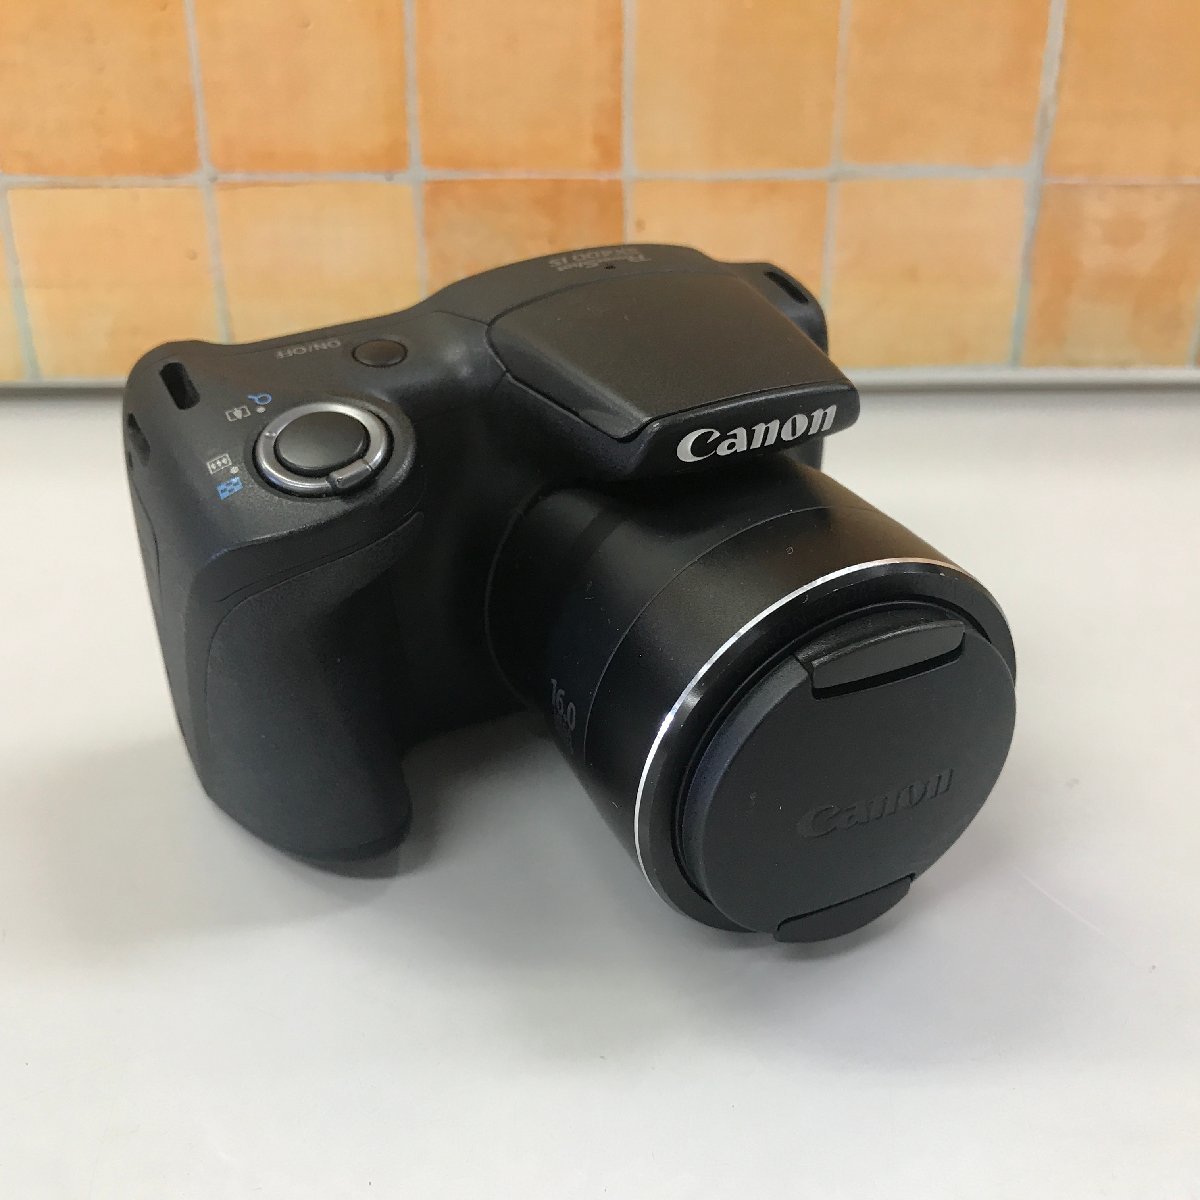 Canon キャノン PowerShot SX400 IS コンパクトデジタルカメラ ブラック バッテリー有り 充電器無し カメラ/904_画像1